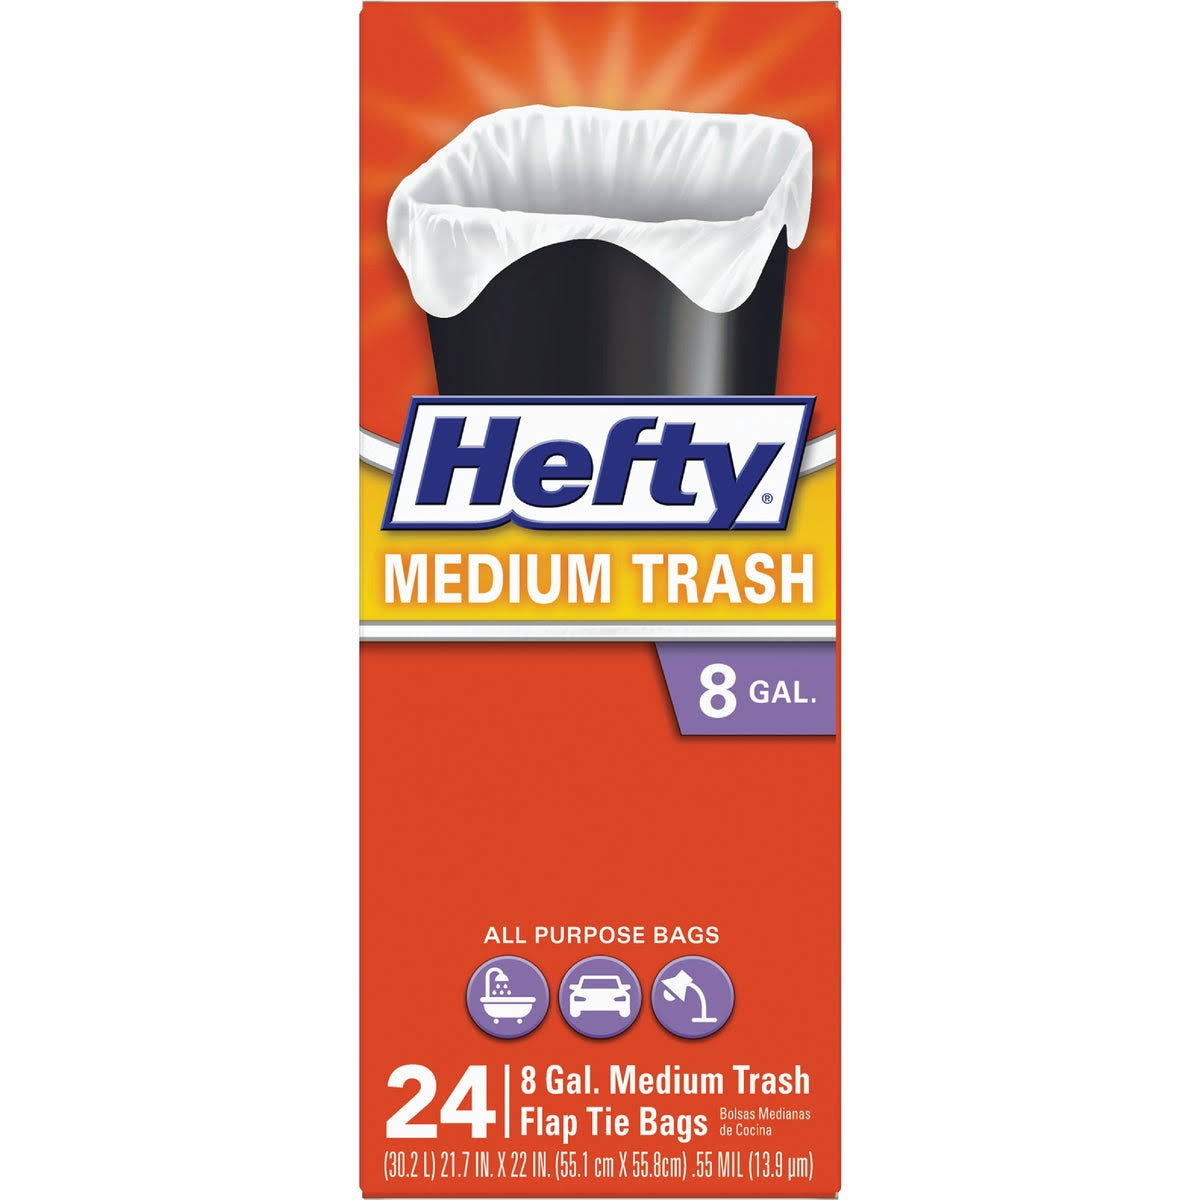 Hefty Medium Trash Bag with Flap Tie - 8gal, 24ct